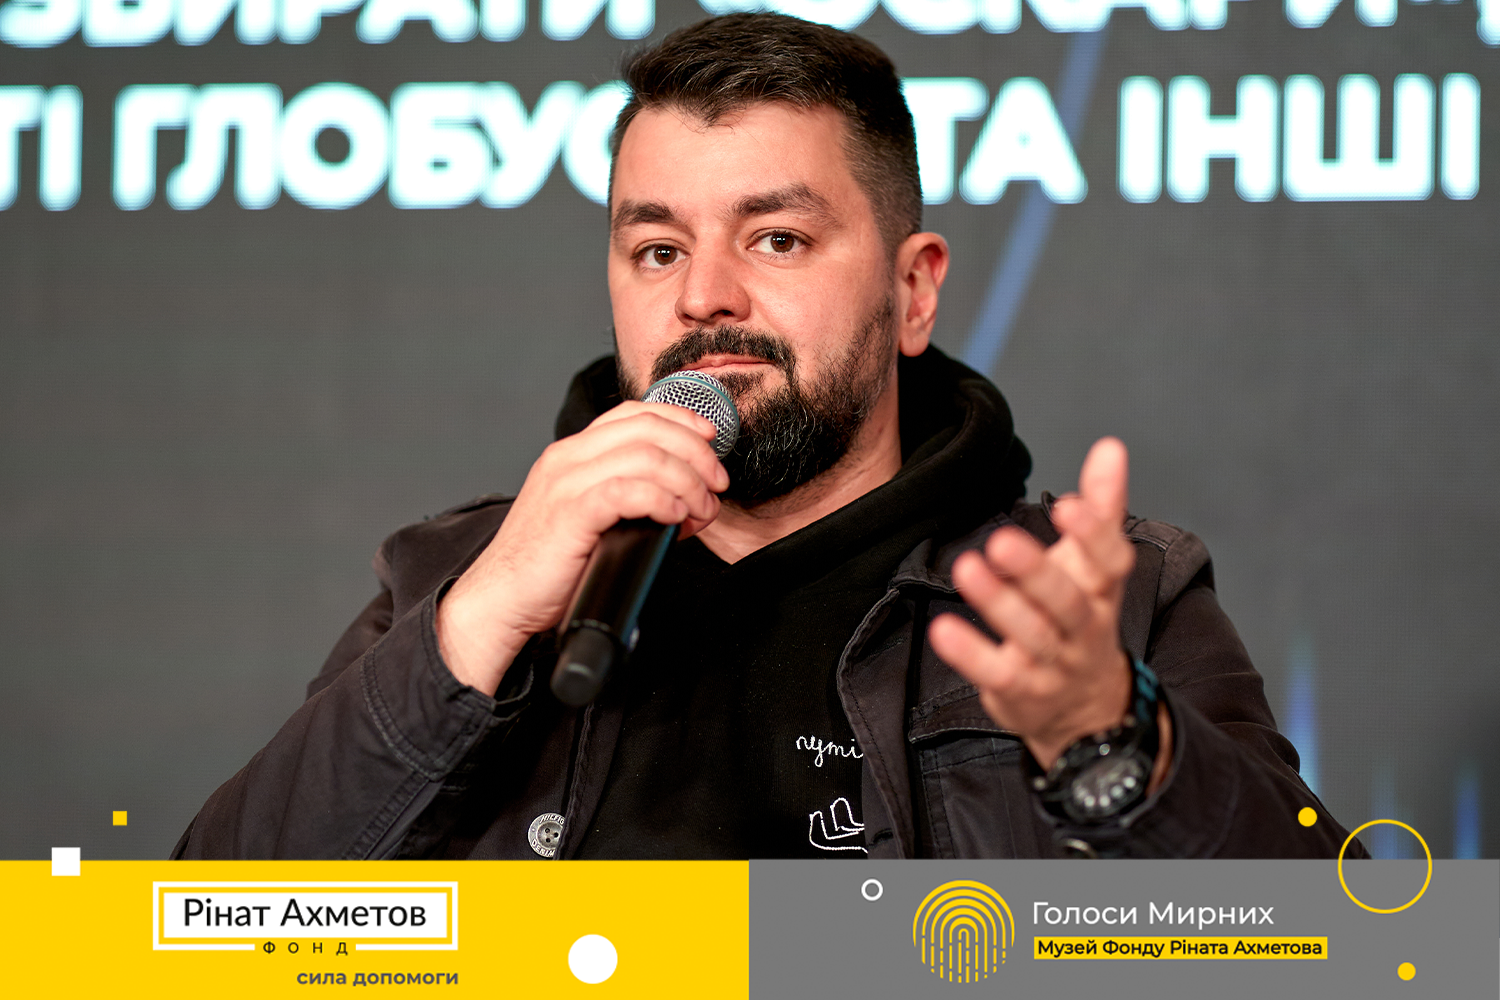 Яким має бути українське кіно, щоб перемагати: відбулася панельна дискусія Музею «Голоси Мирних» Фонду Ріната Ахметова з видатними діячами кіно і культури